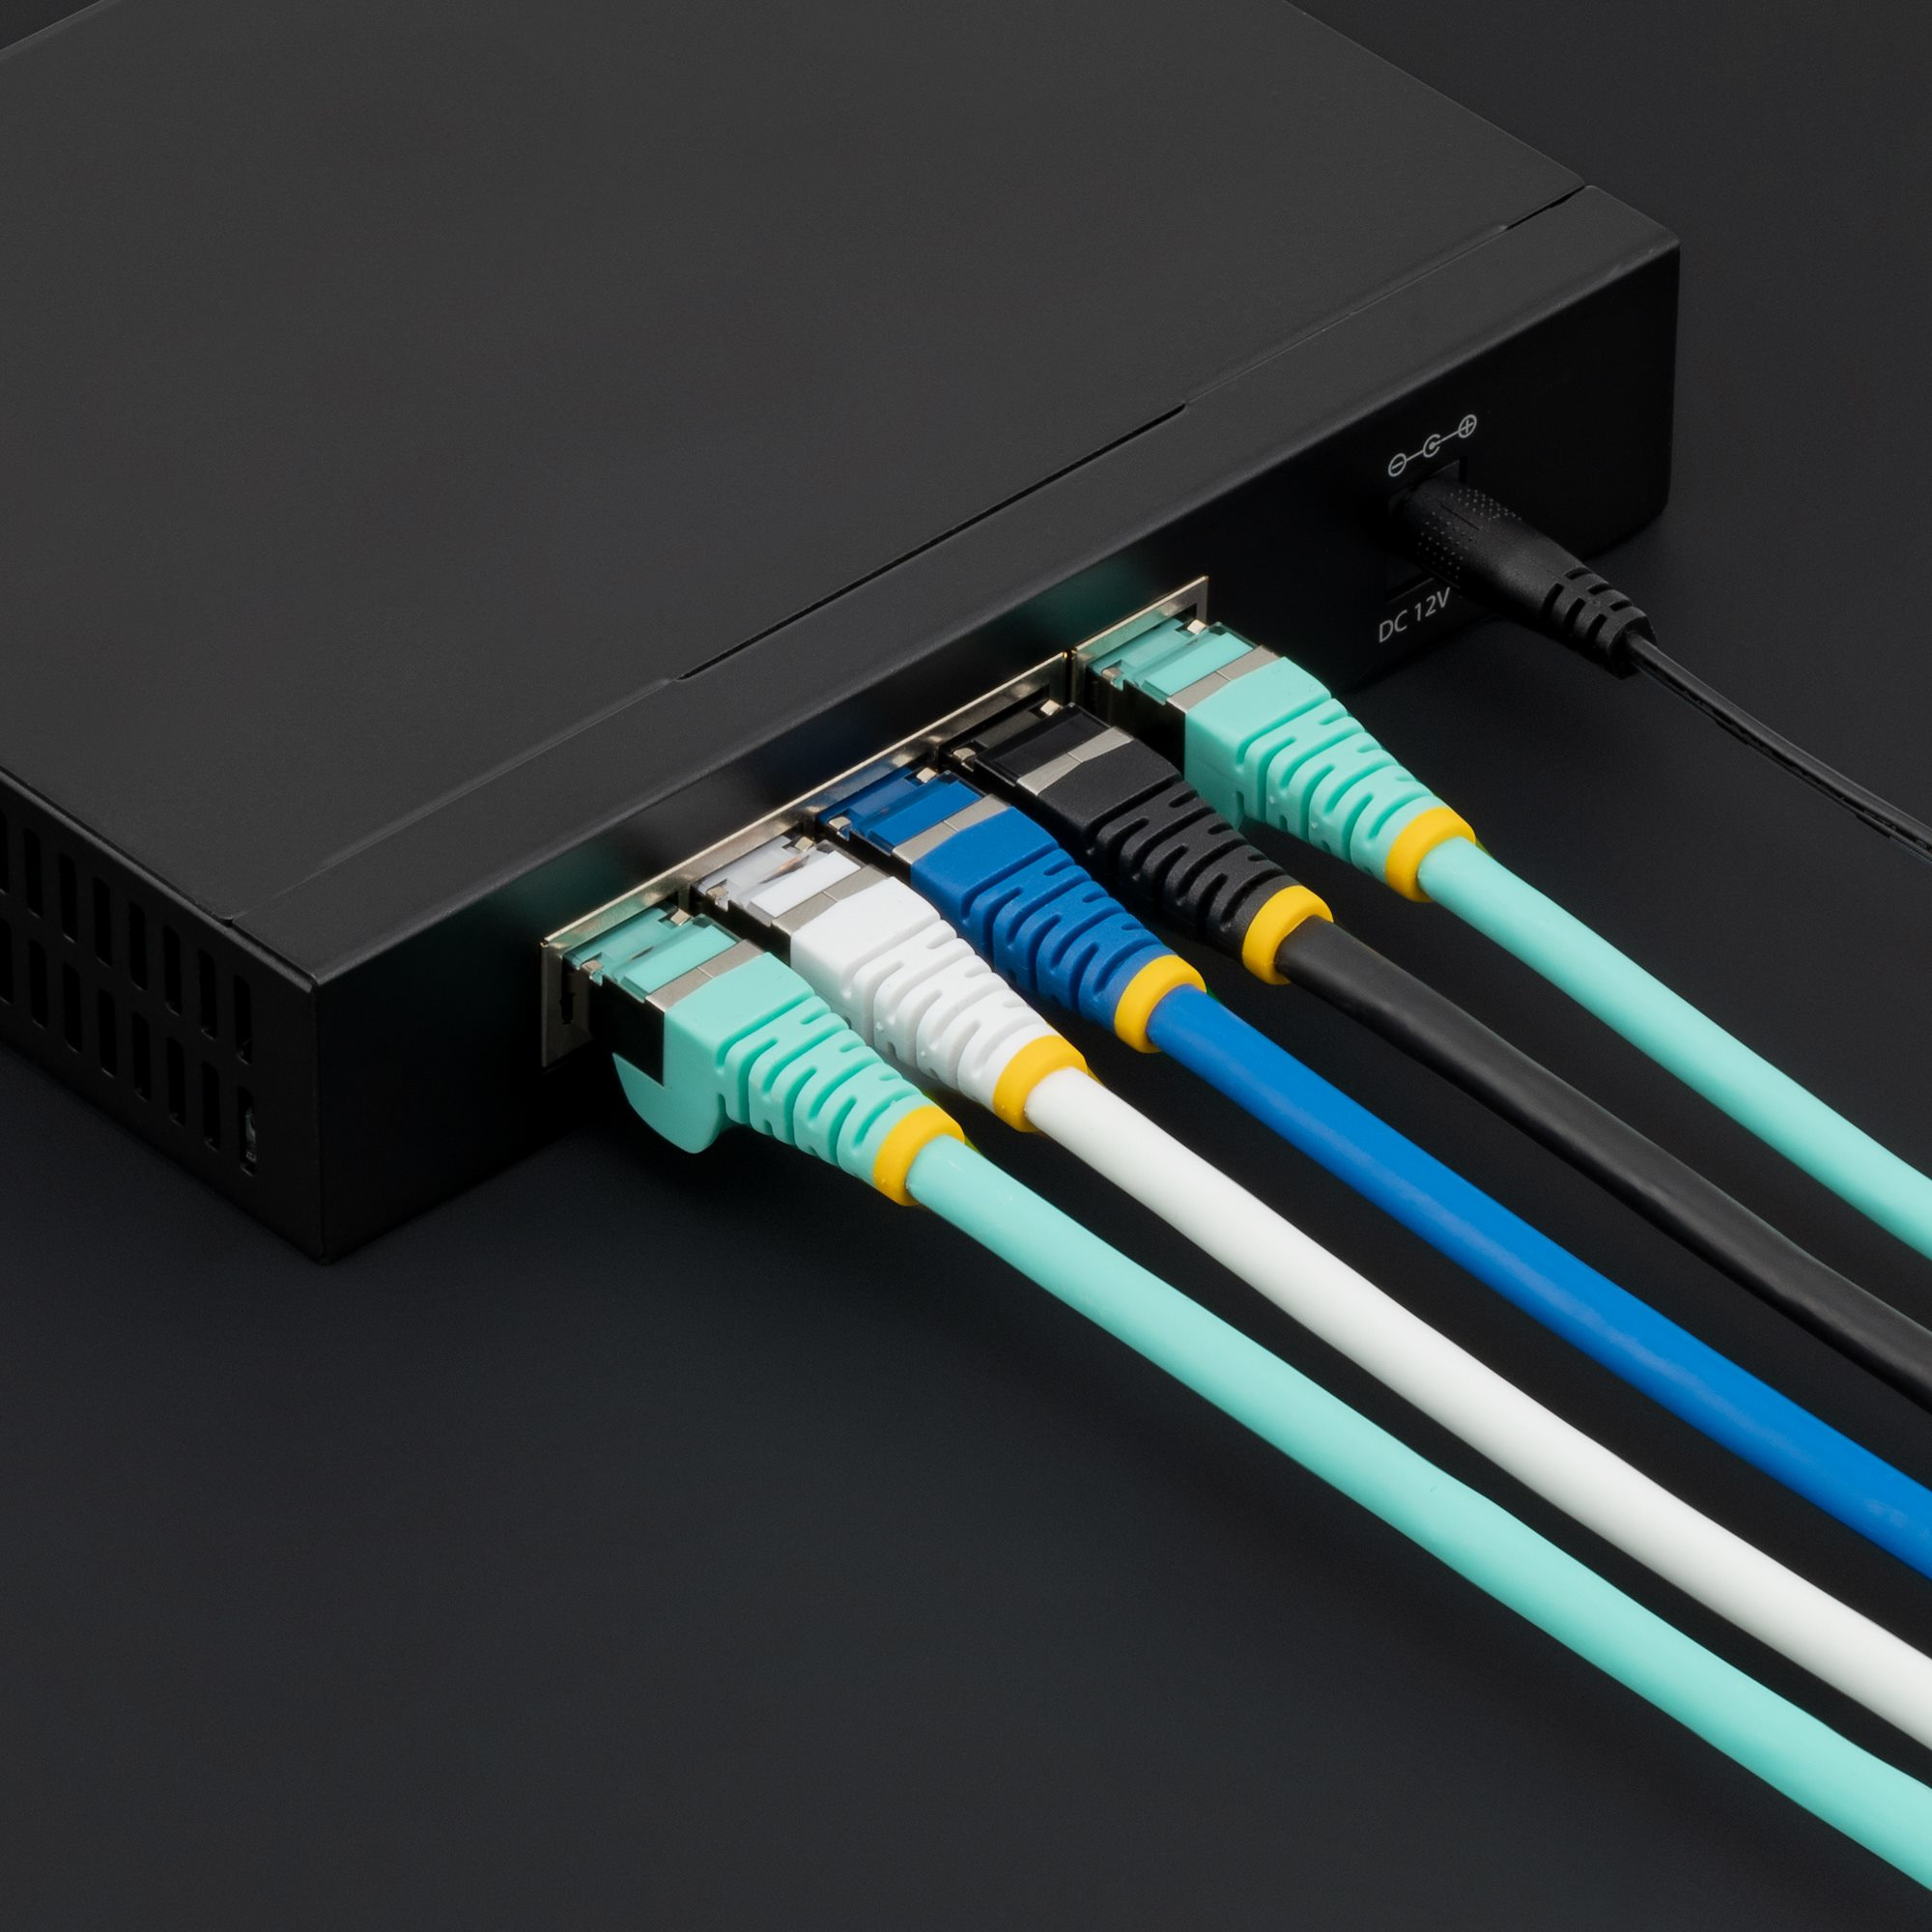 StarTech.com Cable reseau Cat6 Gigabit S/FTP de 3m - Noir - Câble